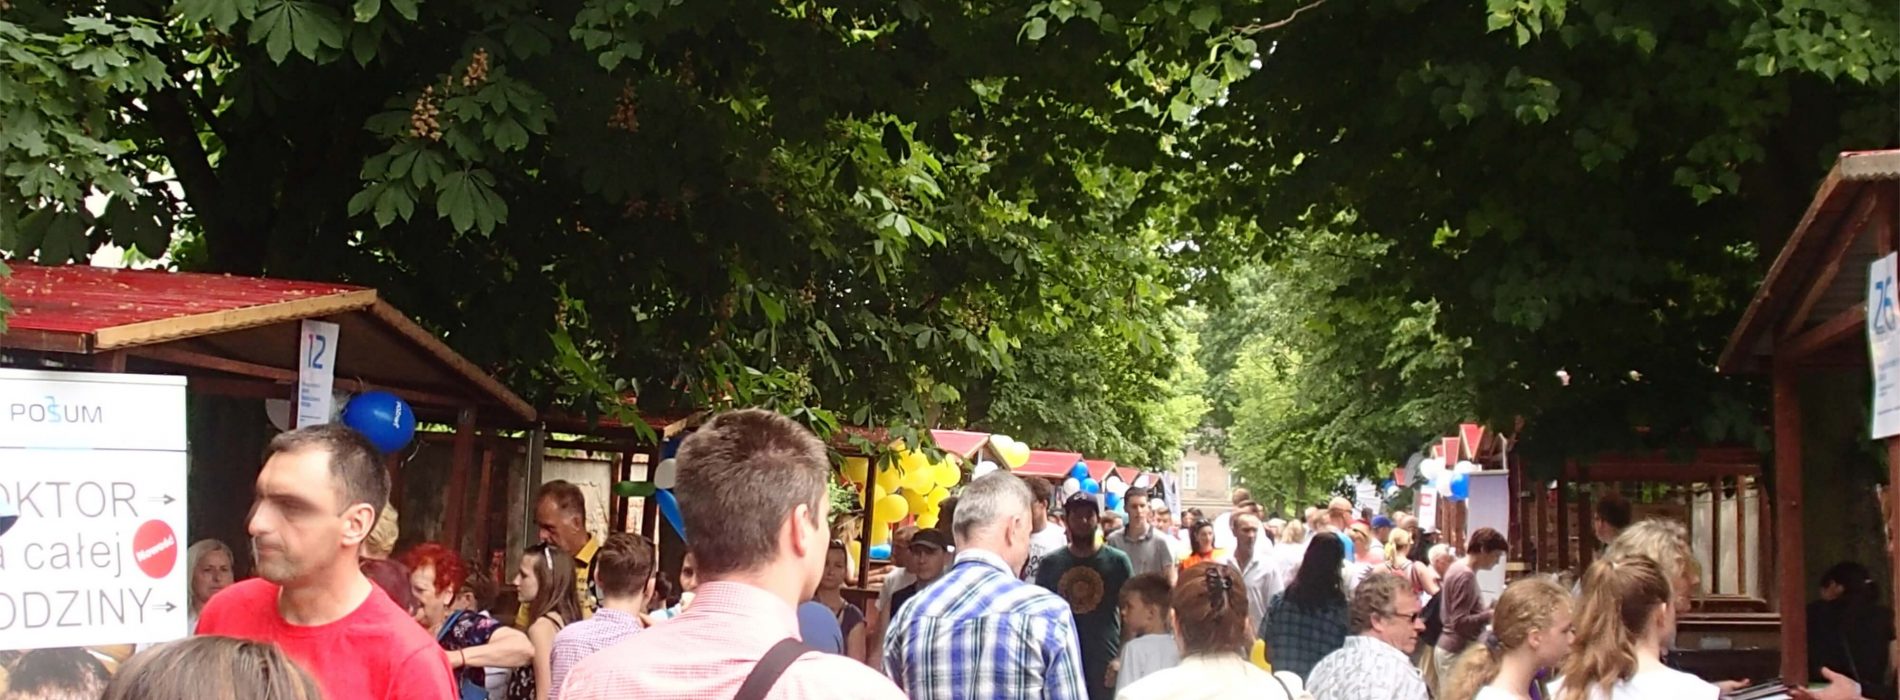 Poznań – festyn na Ostrowie Tumskim pełen zdrowia i kolorów